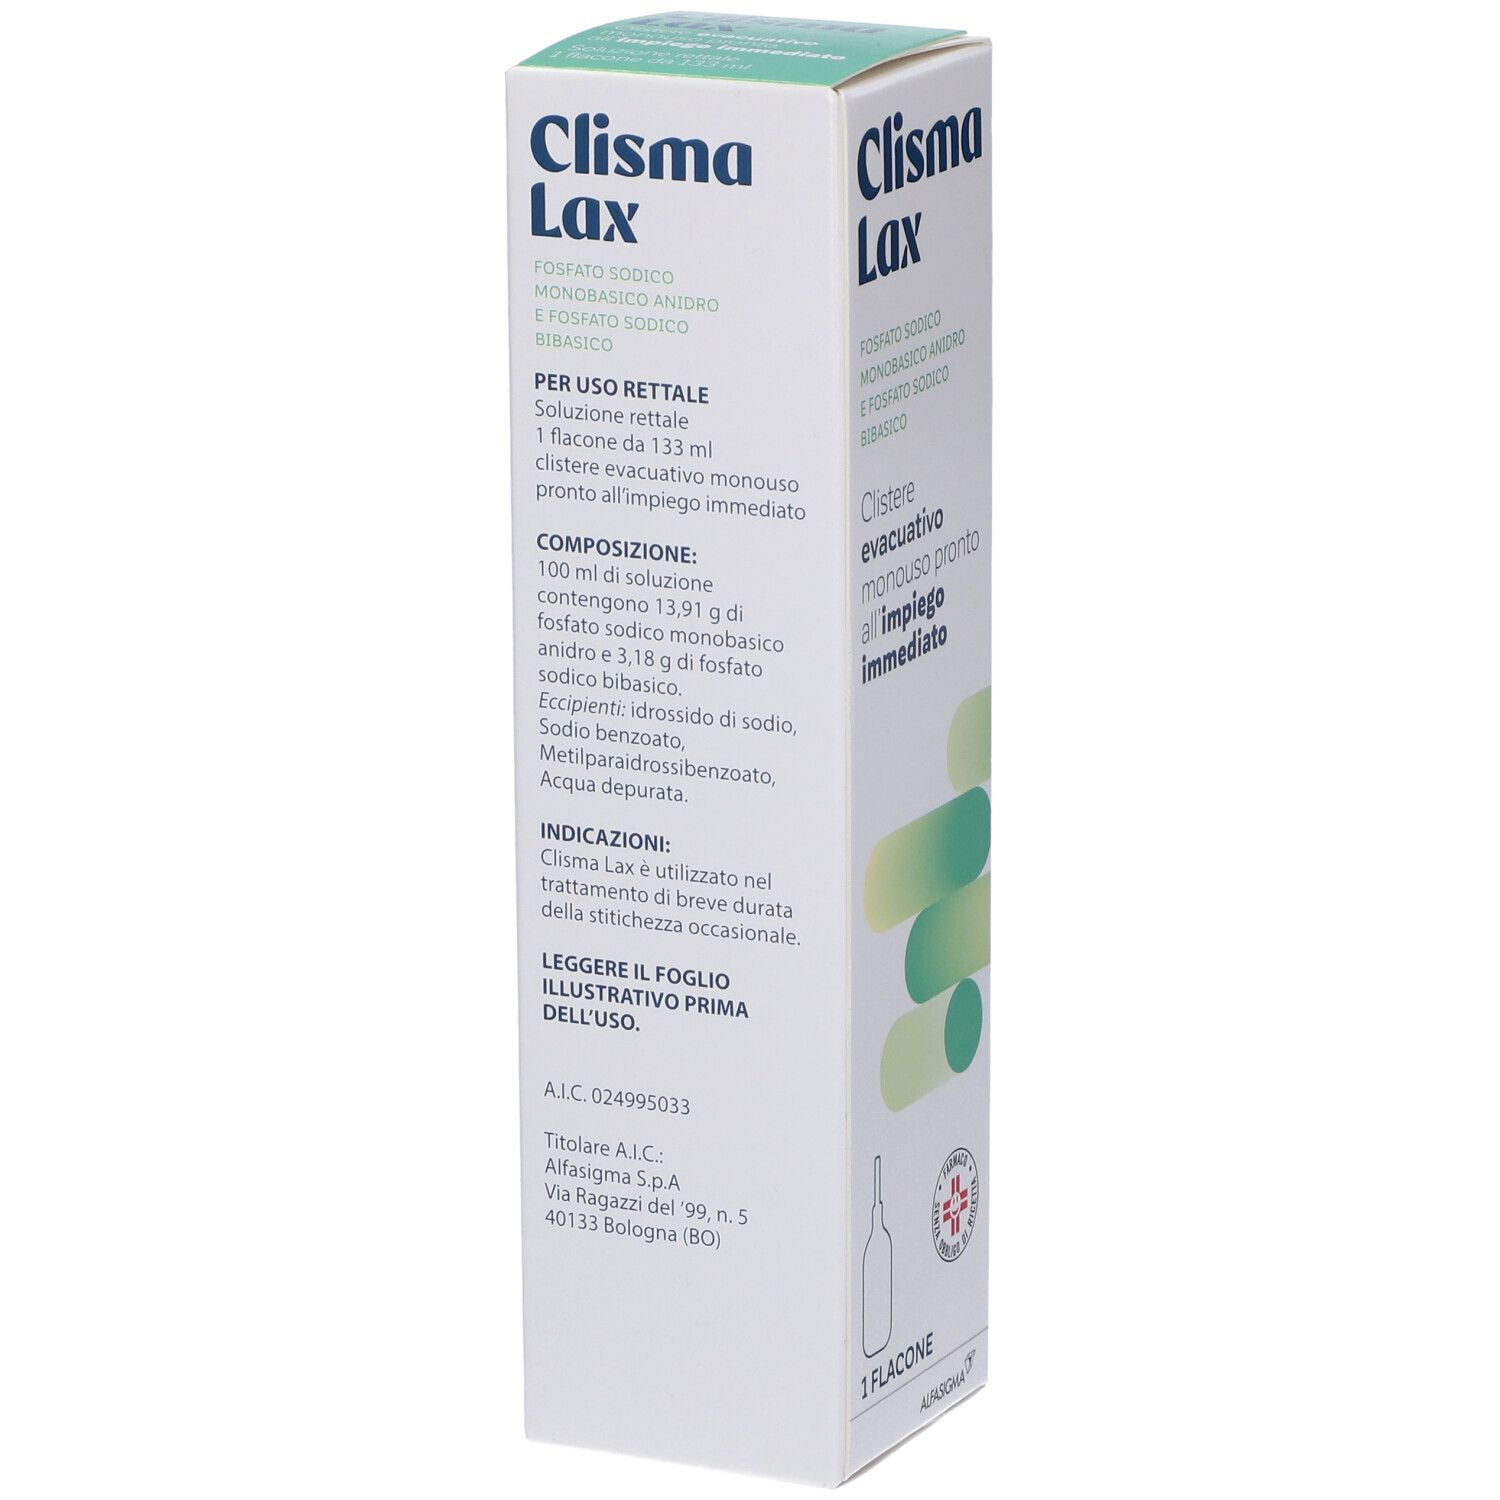 Clisma Lax Soluzione Rettale 1 flacone da 133 ml